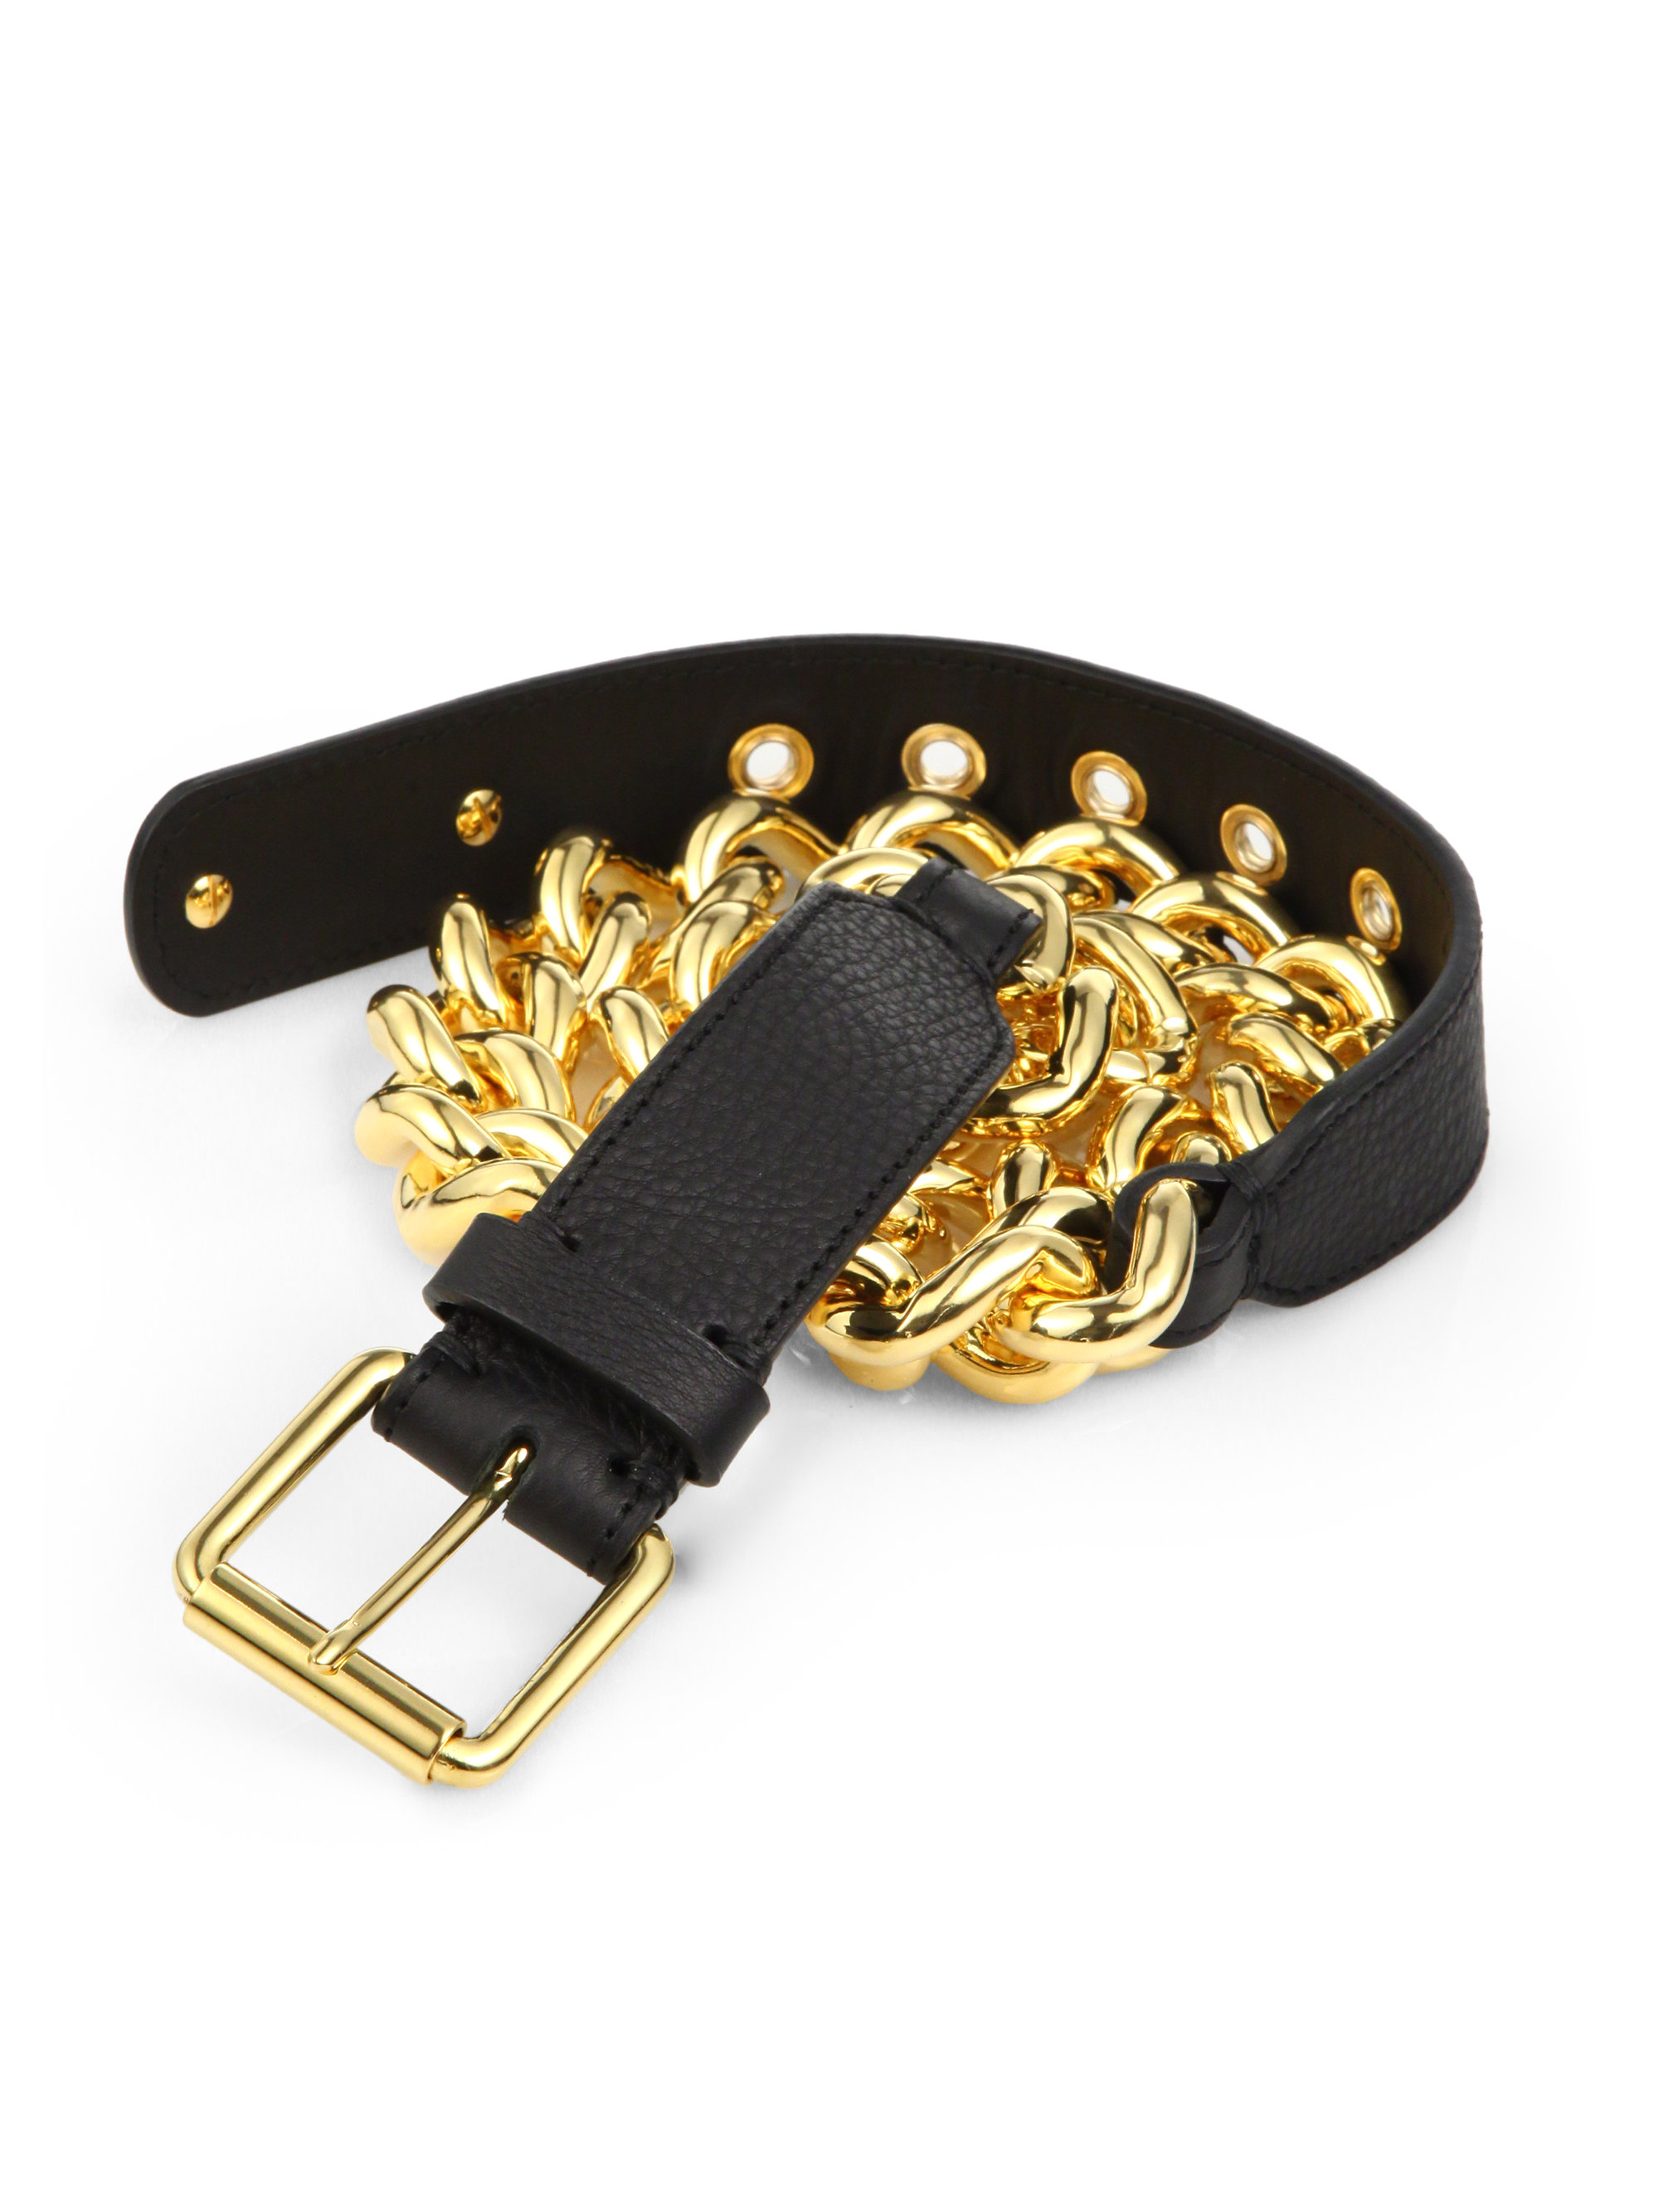 Giuseppe Zanotti Leather Chain Belt in Black-Gold (Black) for Men - Lyst